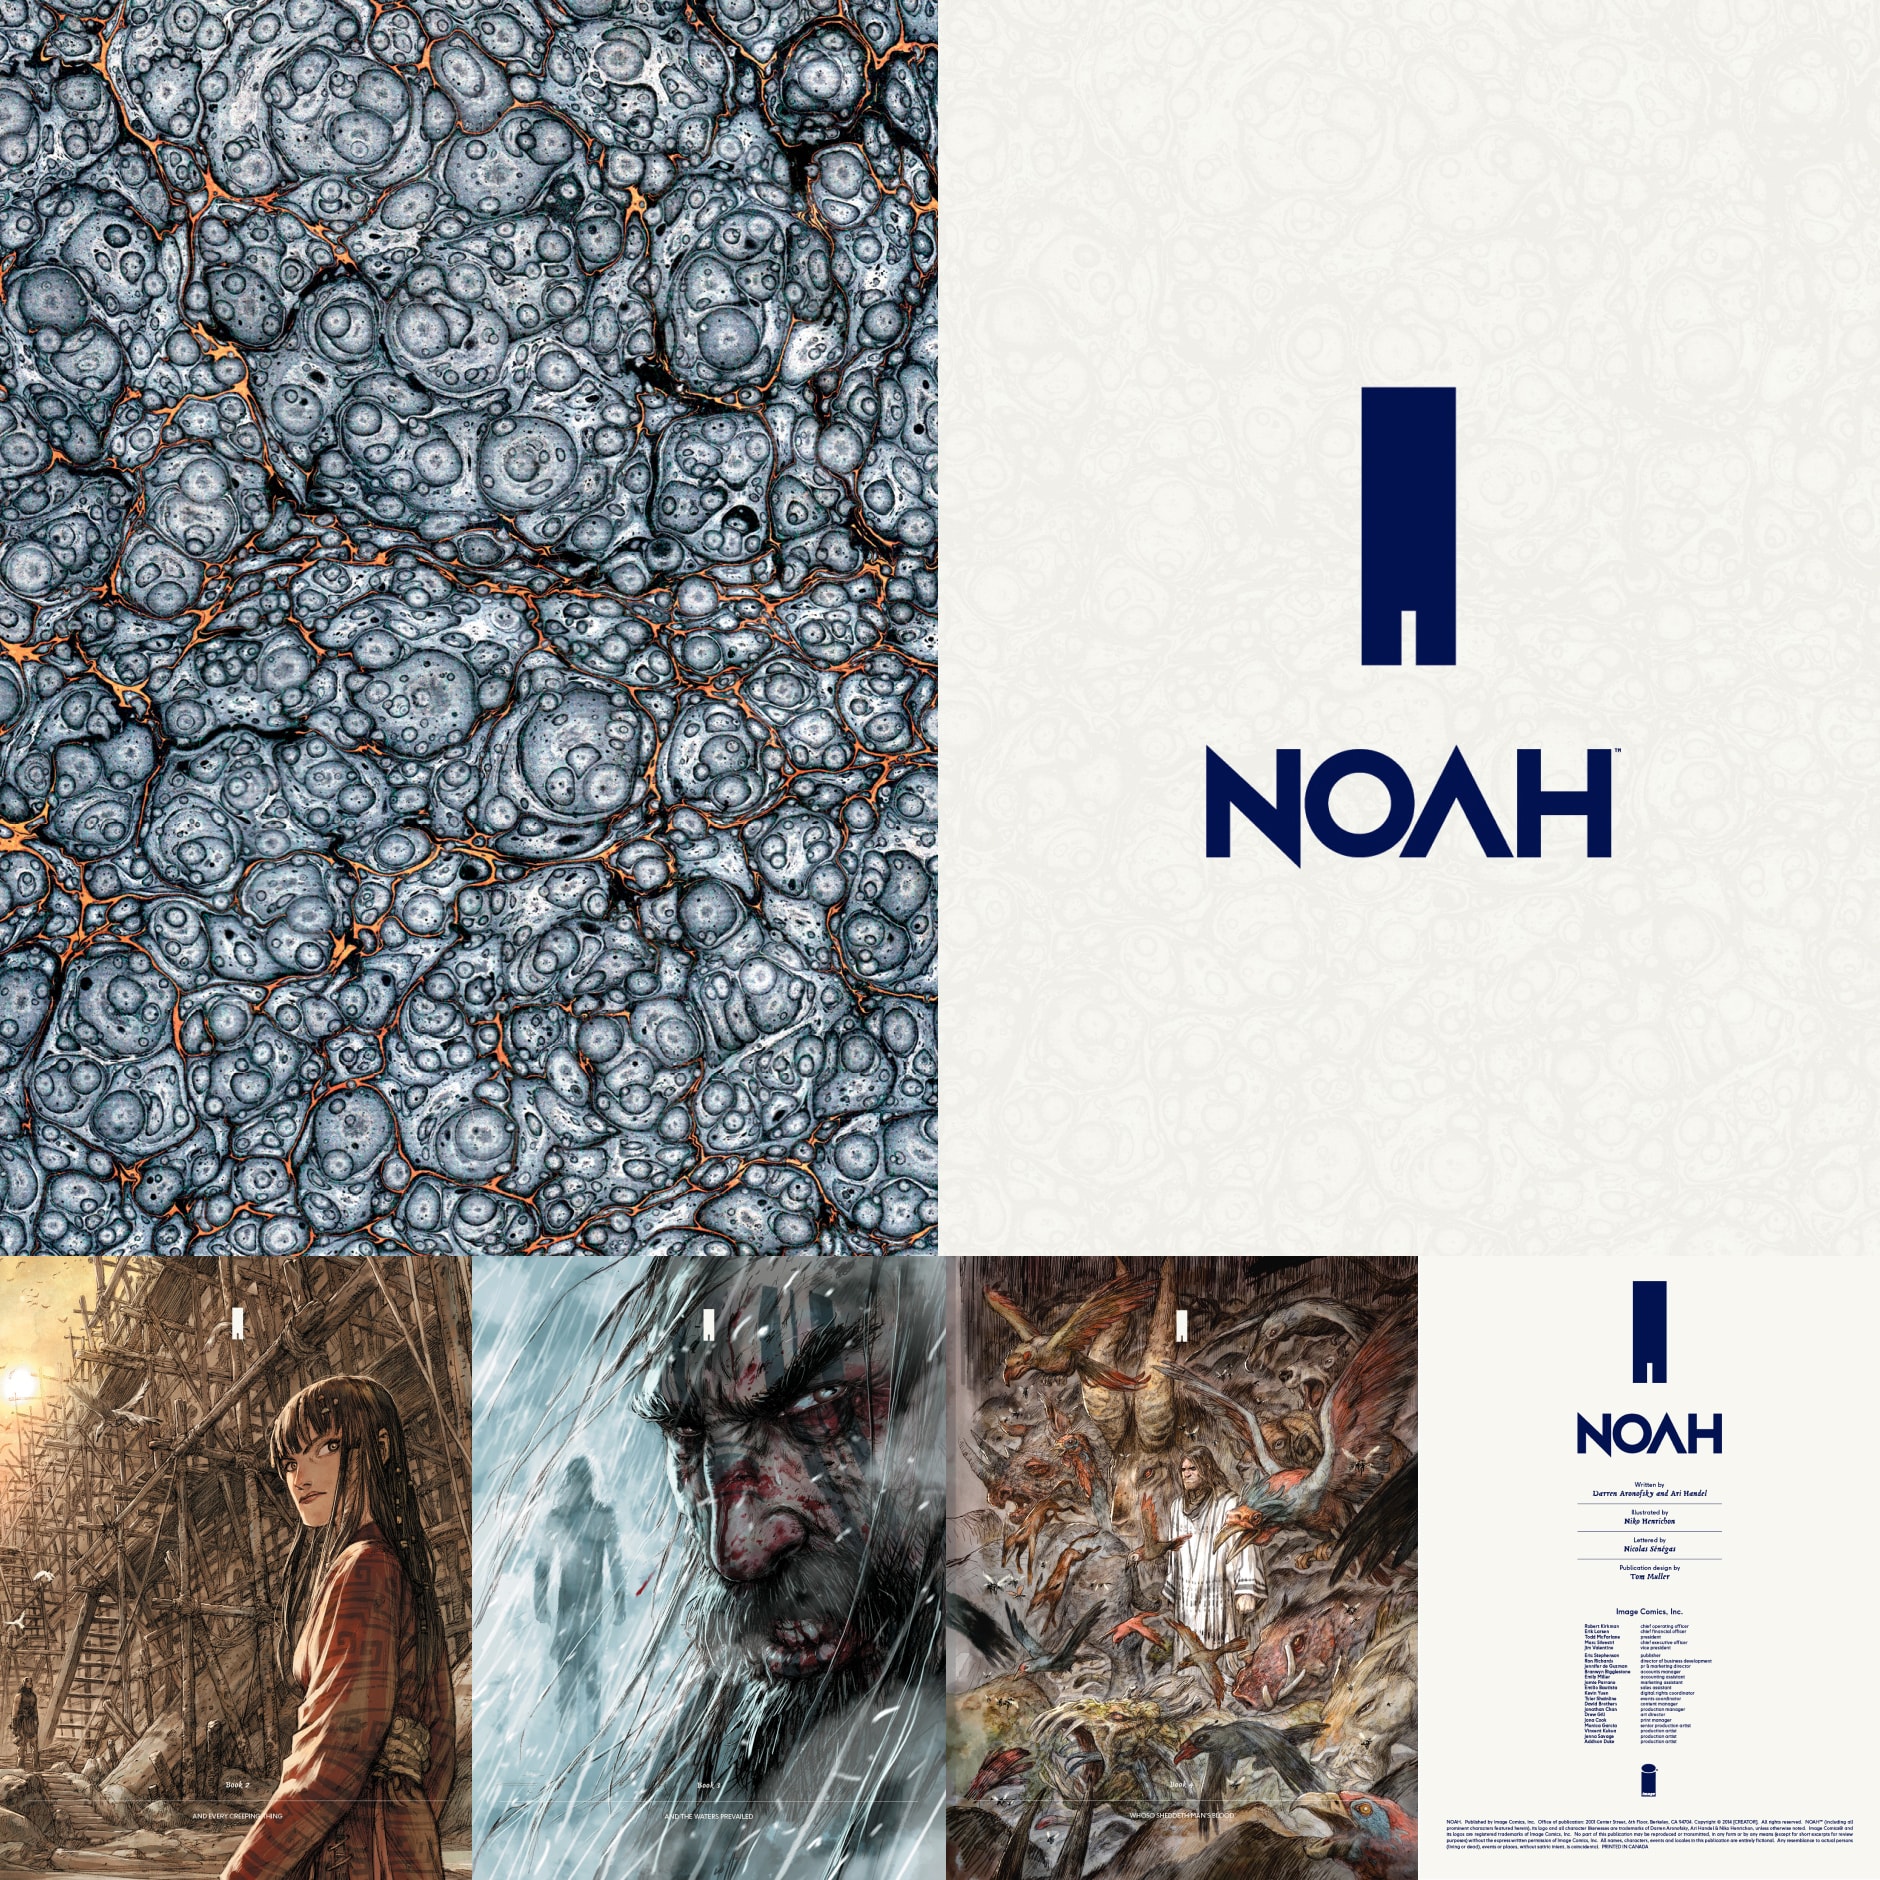 NOAH pages